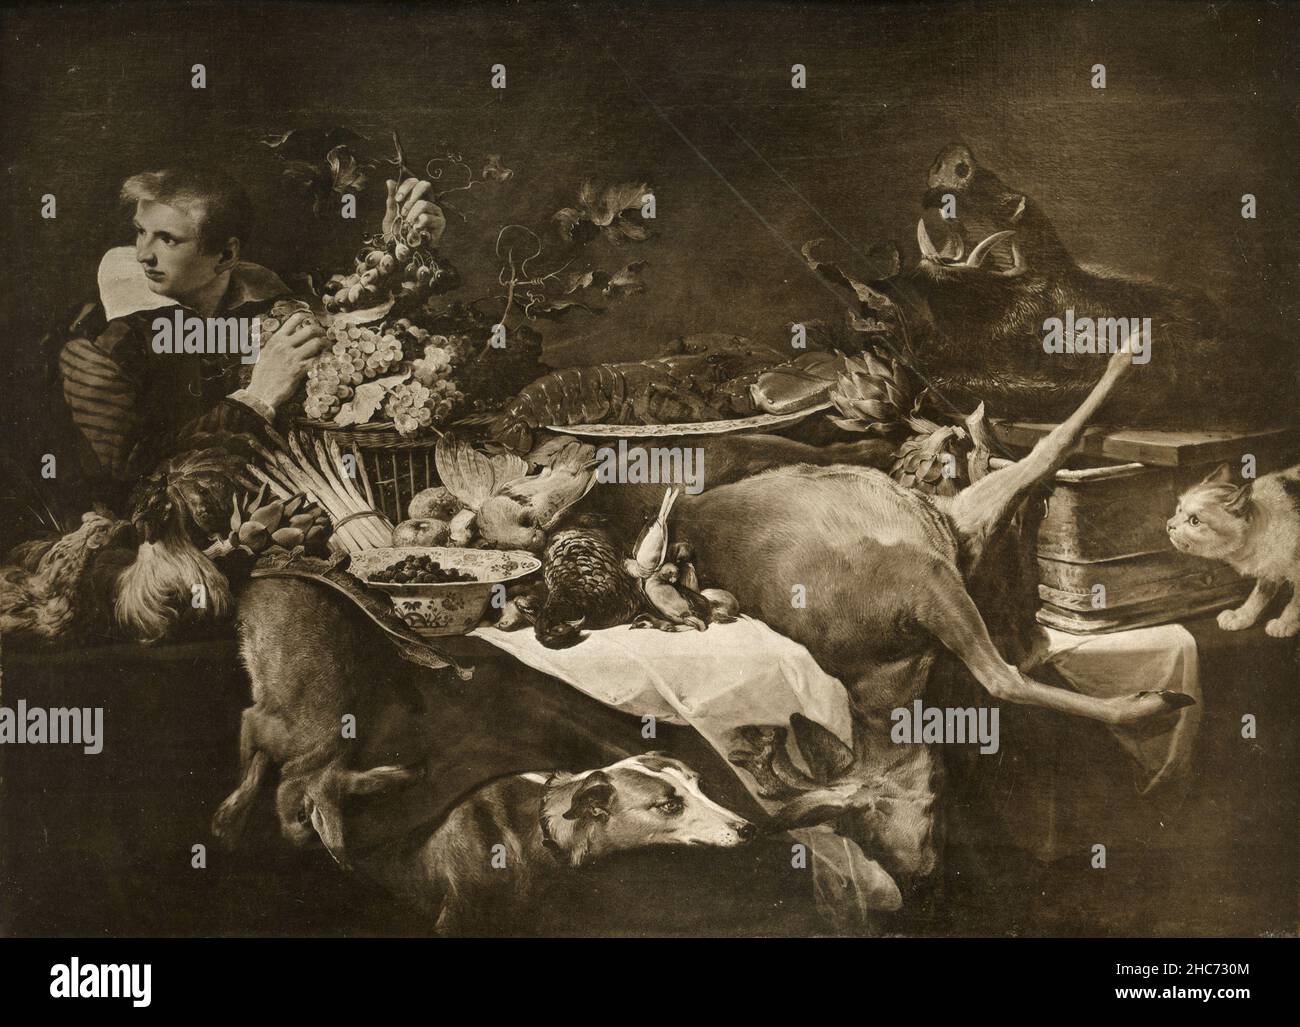 Encore la vie avec des amins, peinture de l'artiste flamand Frans Snyders, Munich 1897 Banque D'Images